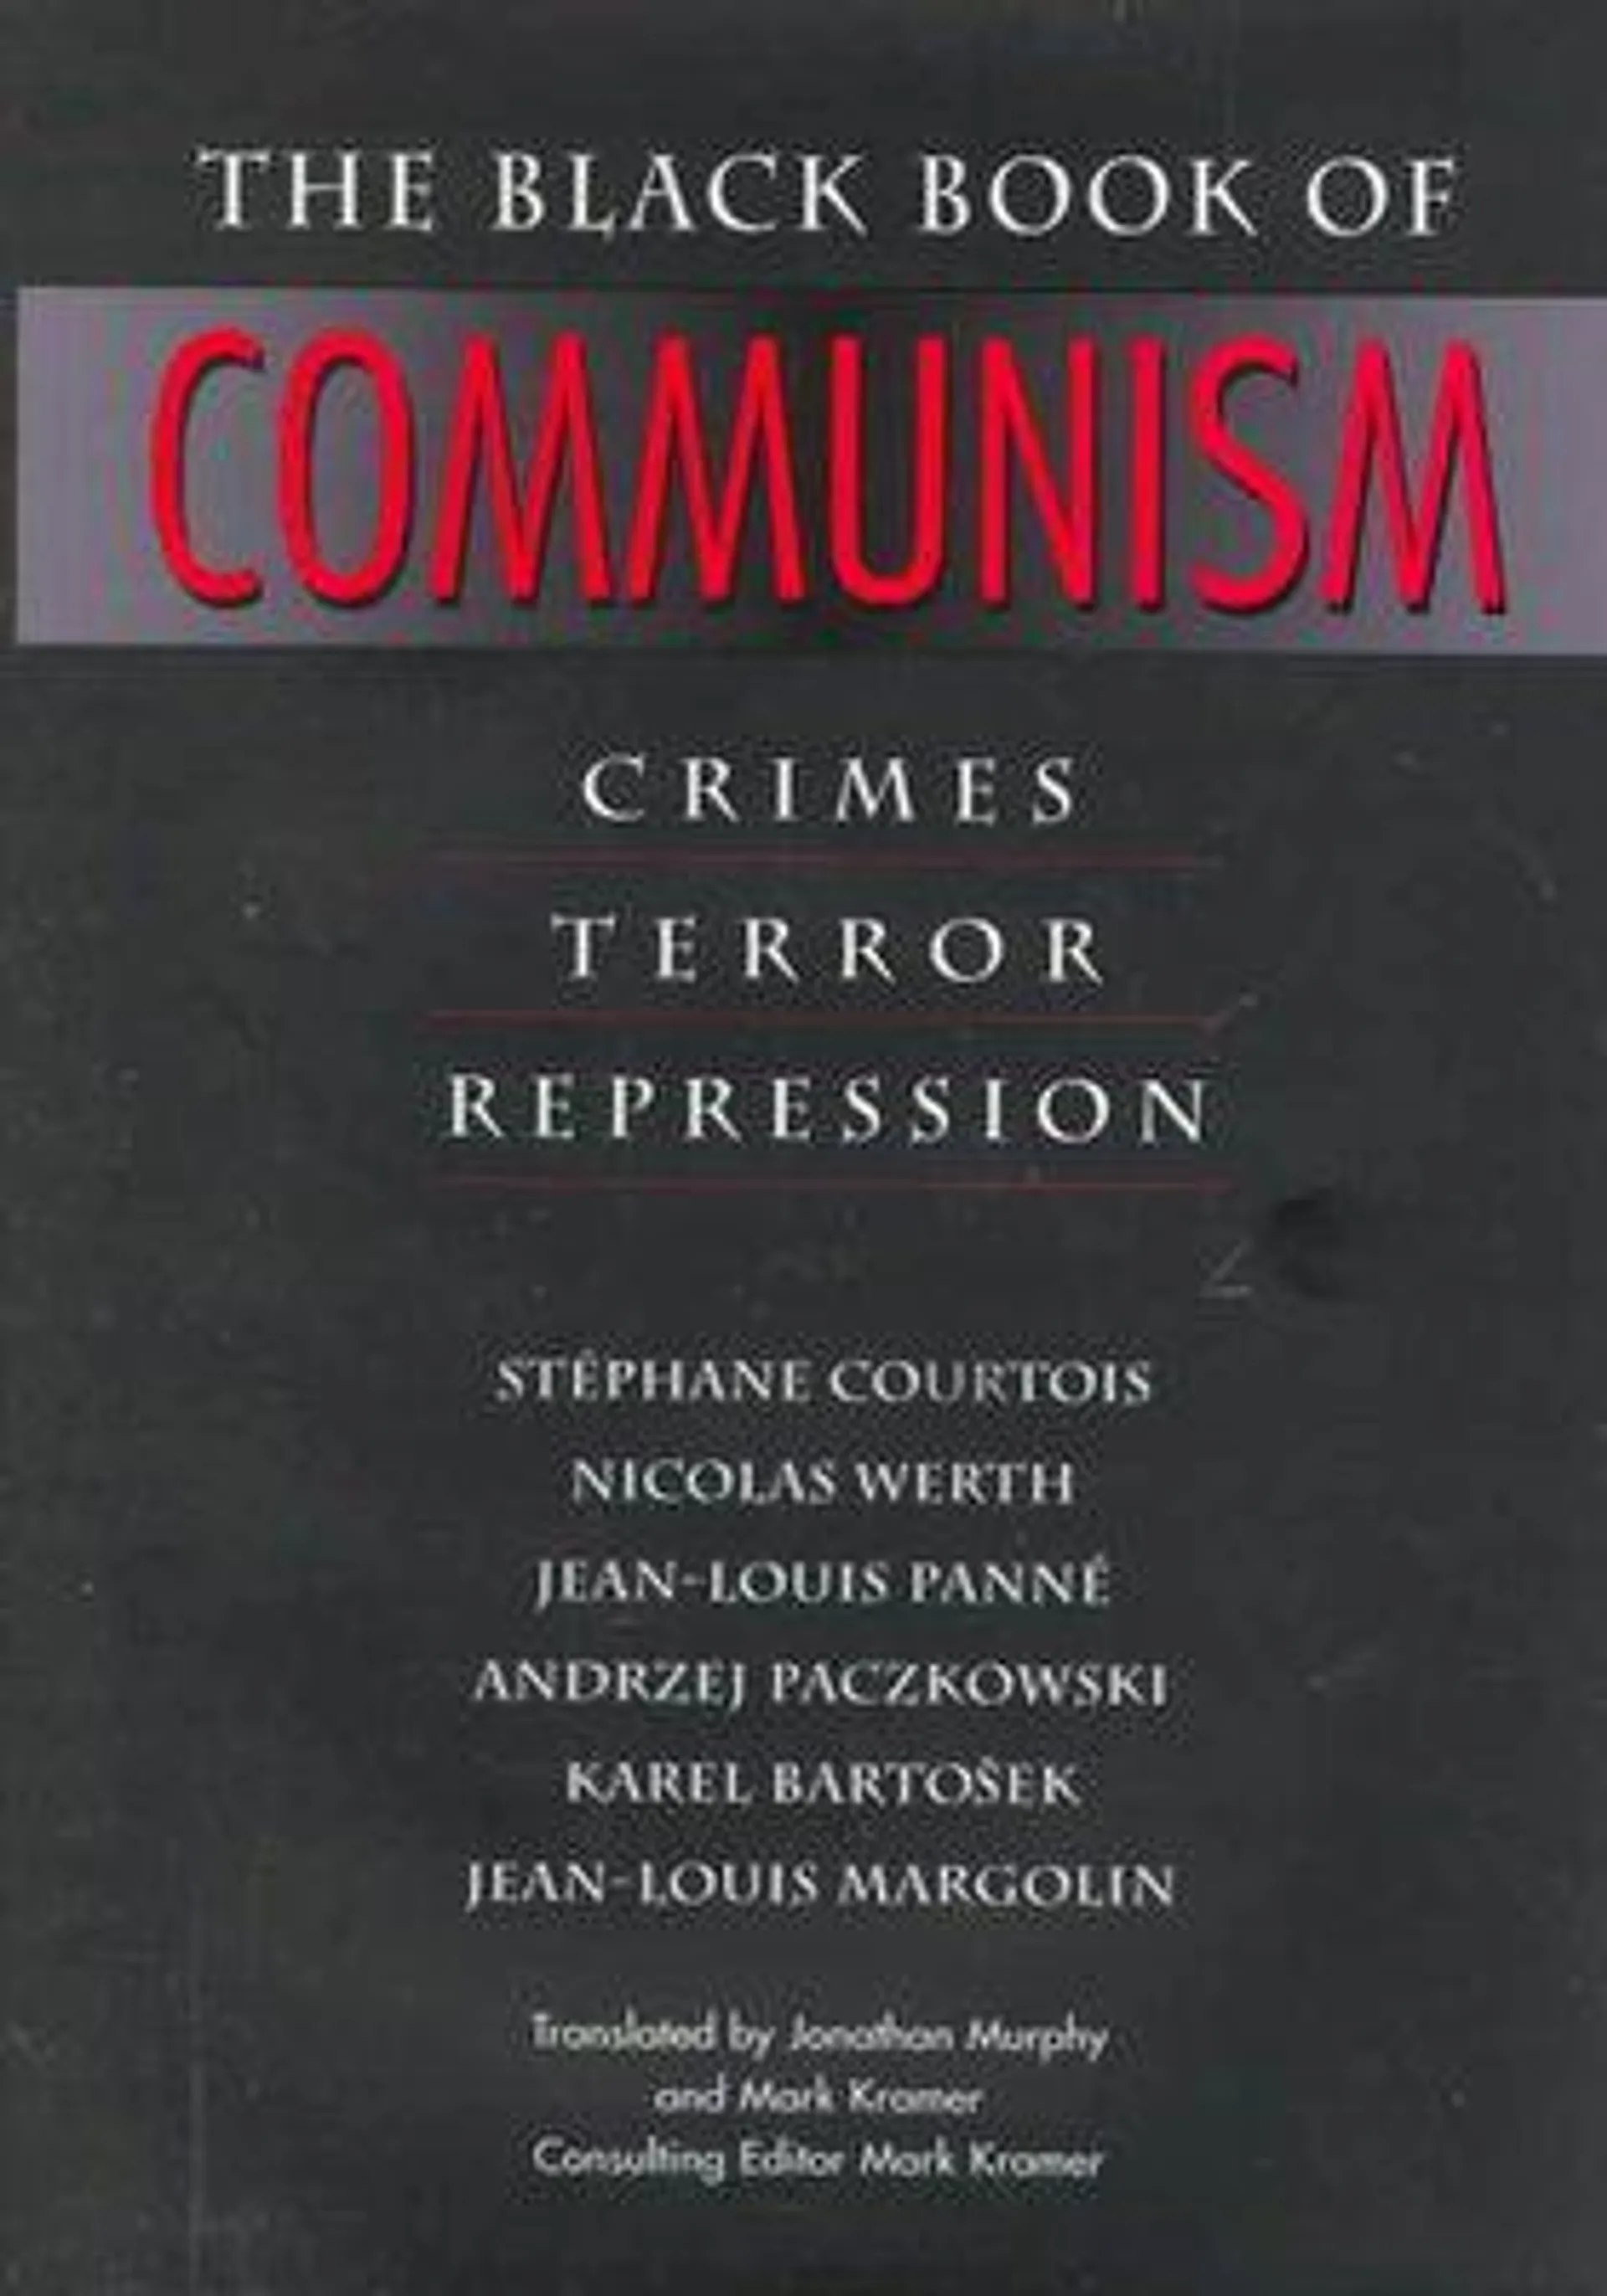 : Crimes, Terror, Repression